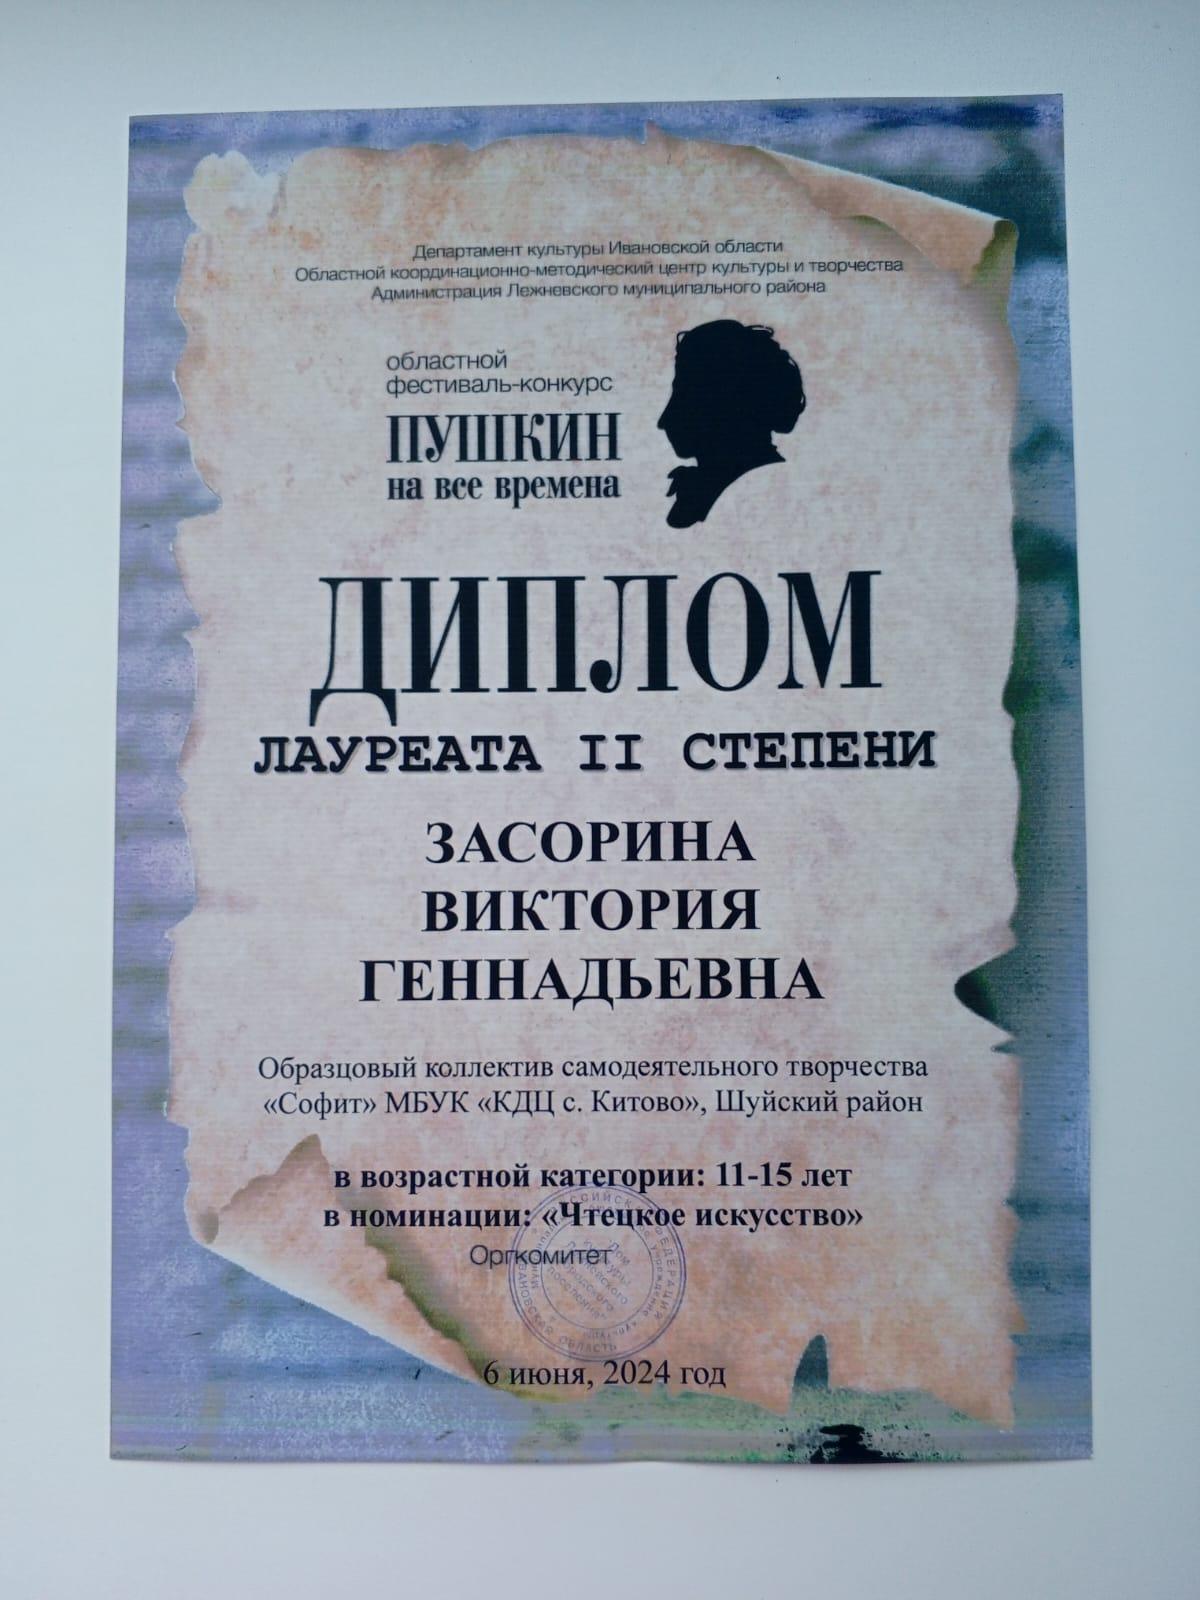 Фестиваль-конкурс «Пушкин на все времена»